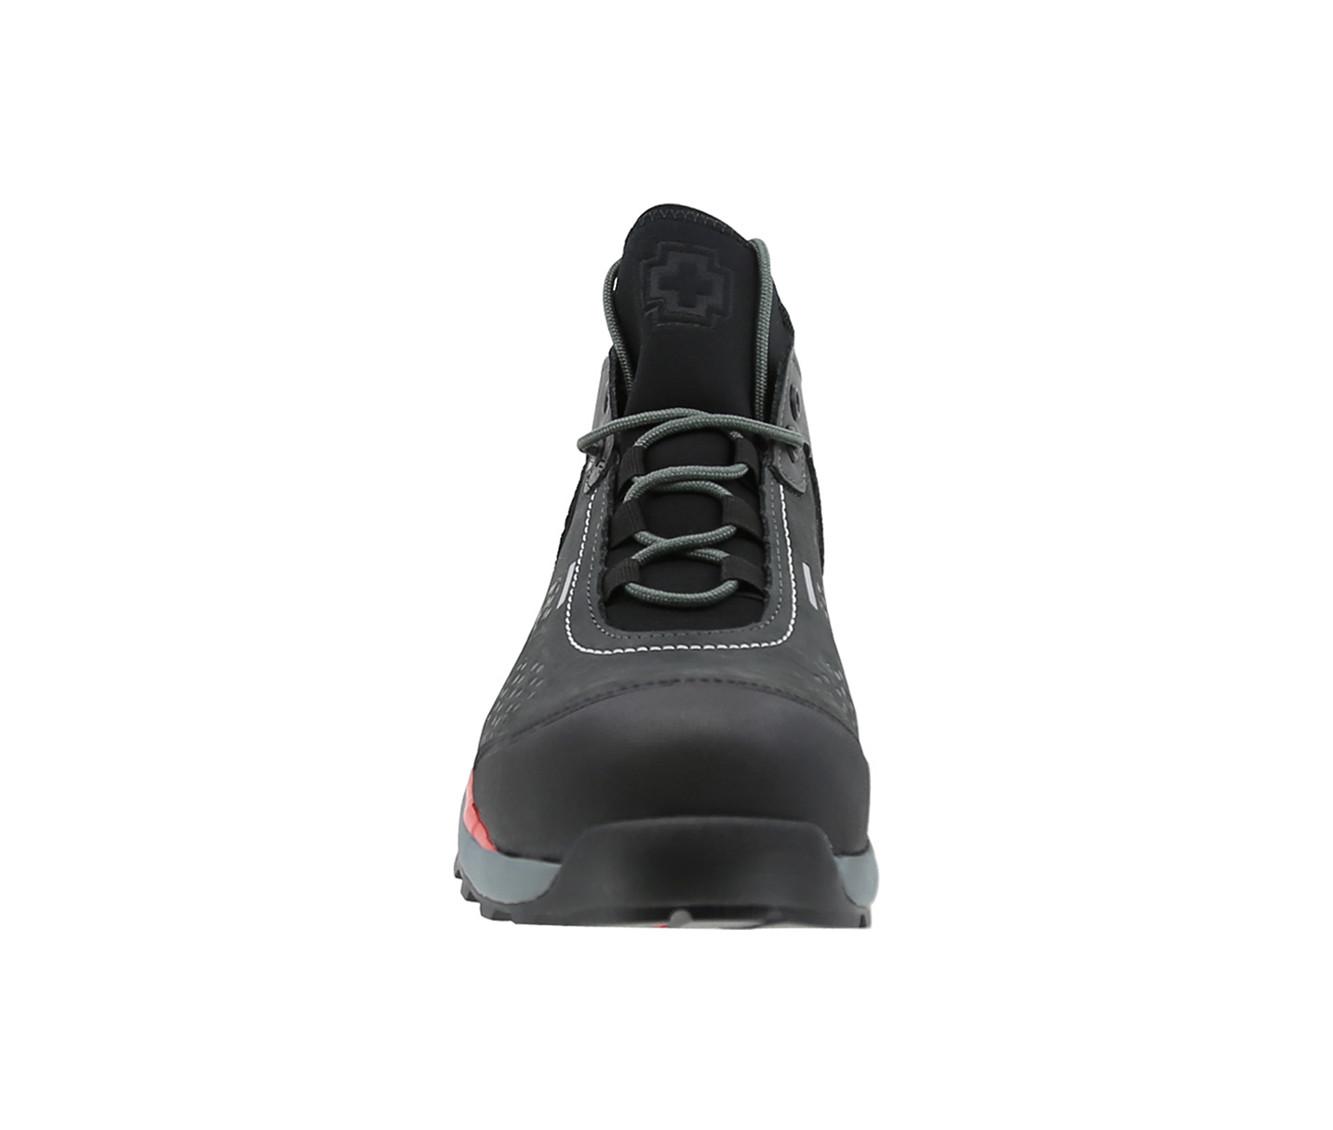 Men's Swissbrand Vaud Work Boot 640 Boots